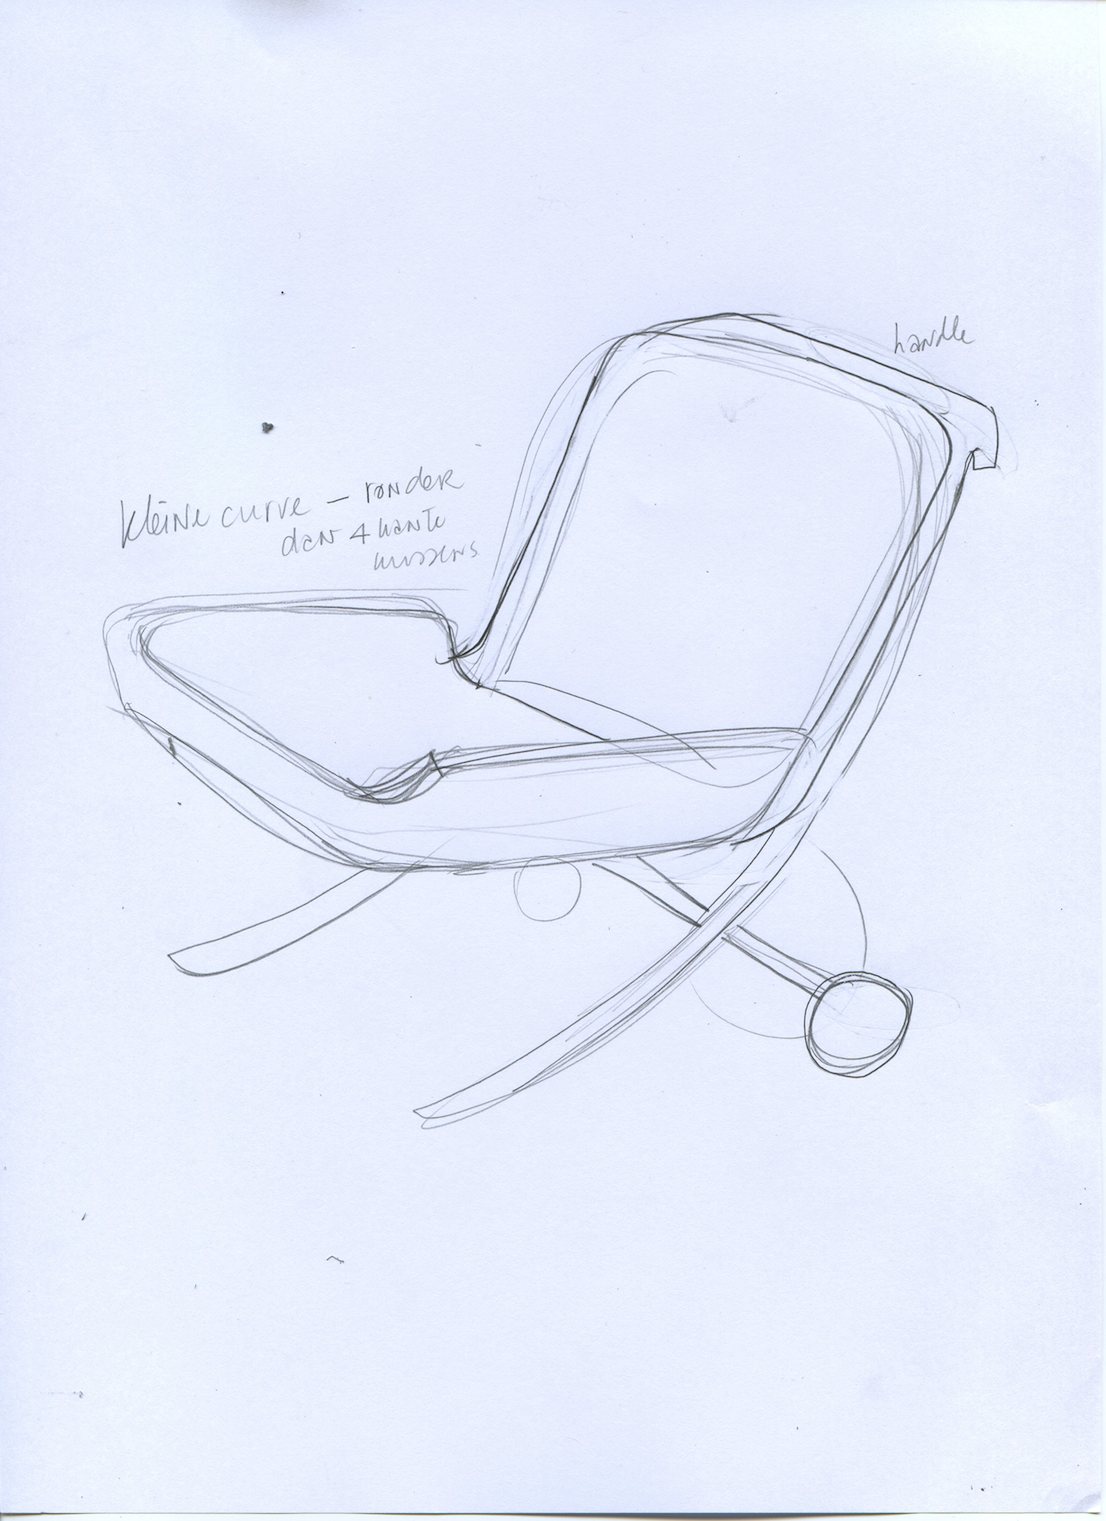 East River Chair, design di Hella Jongerius per Vitra